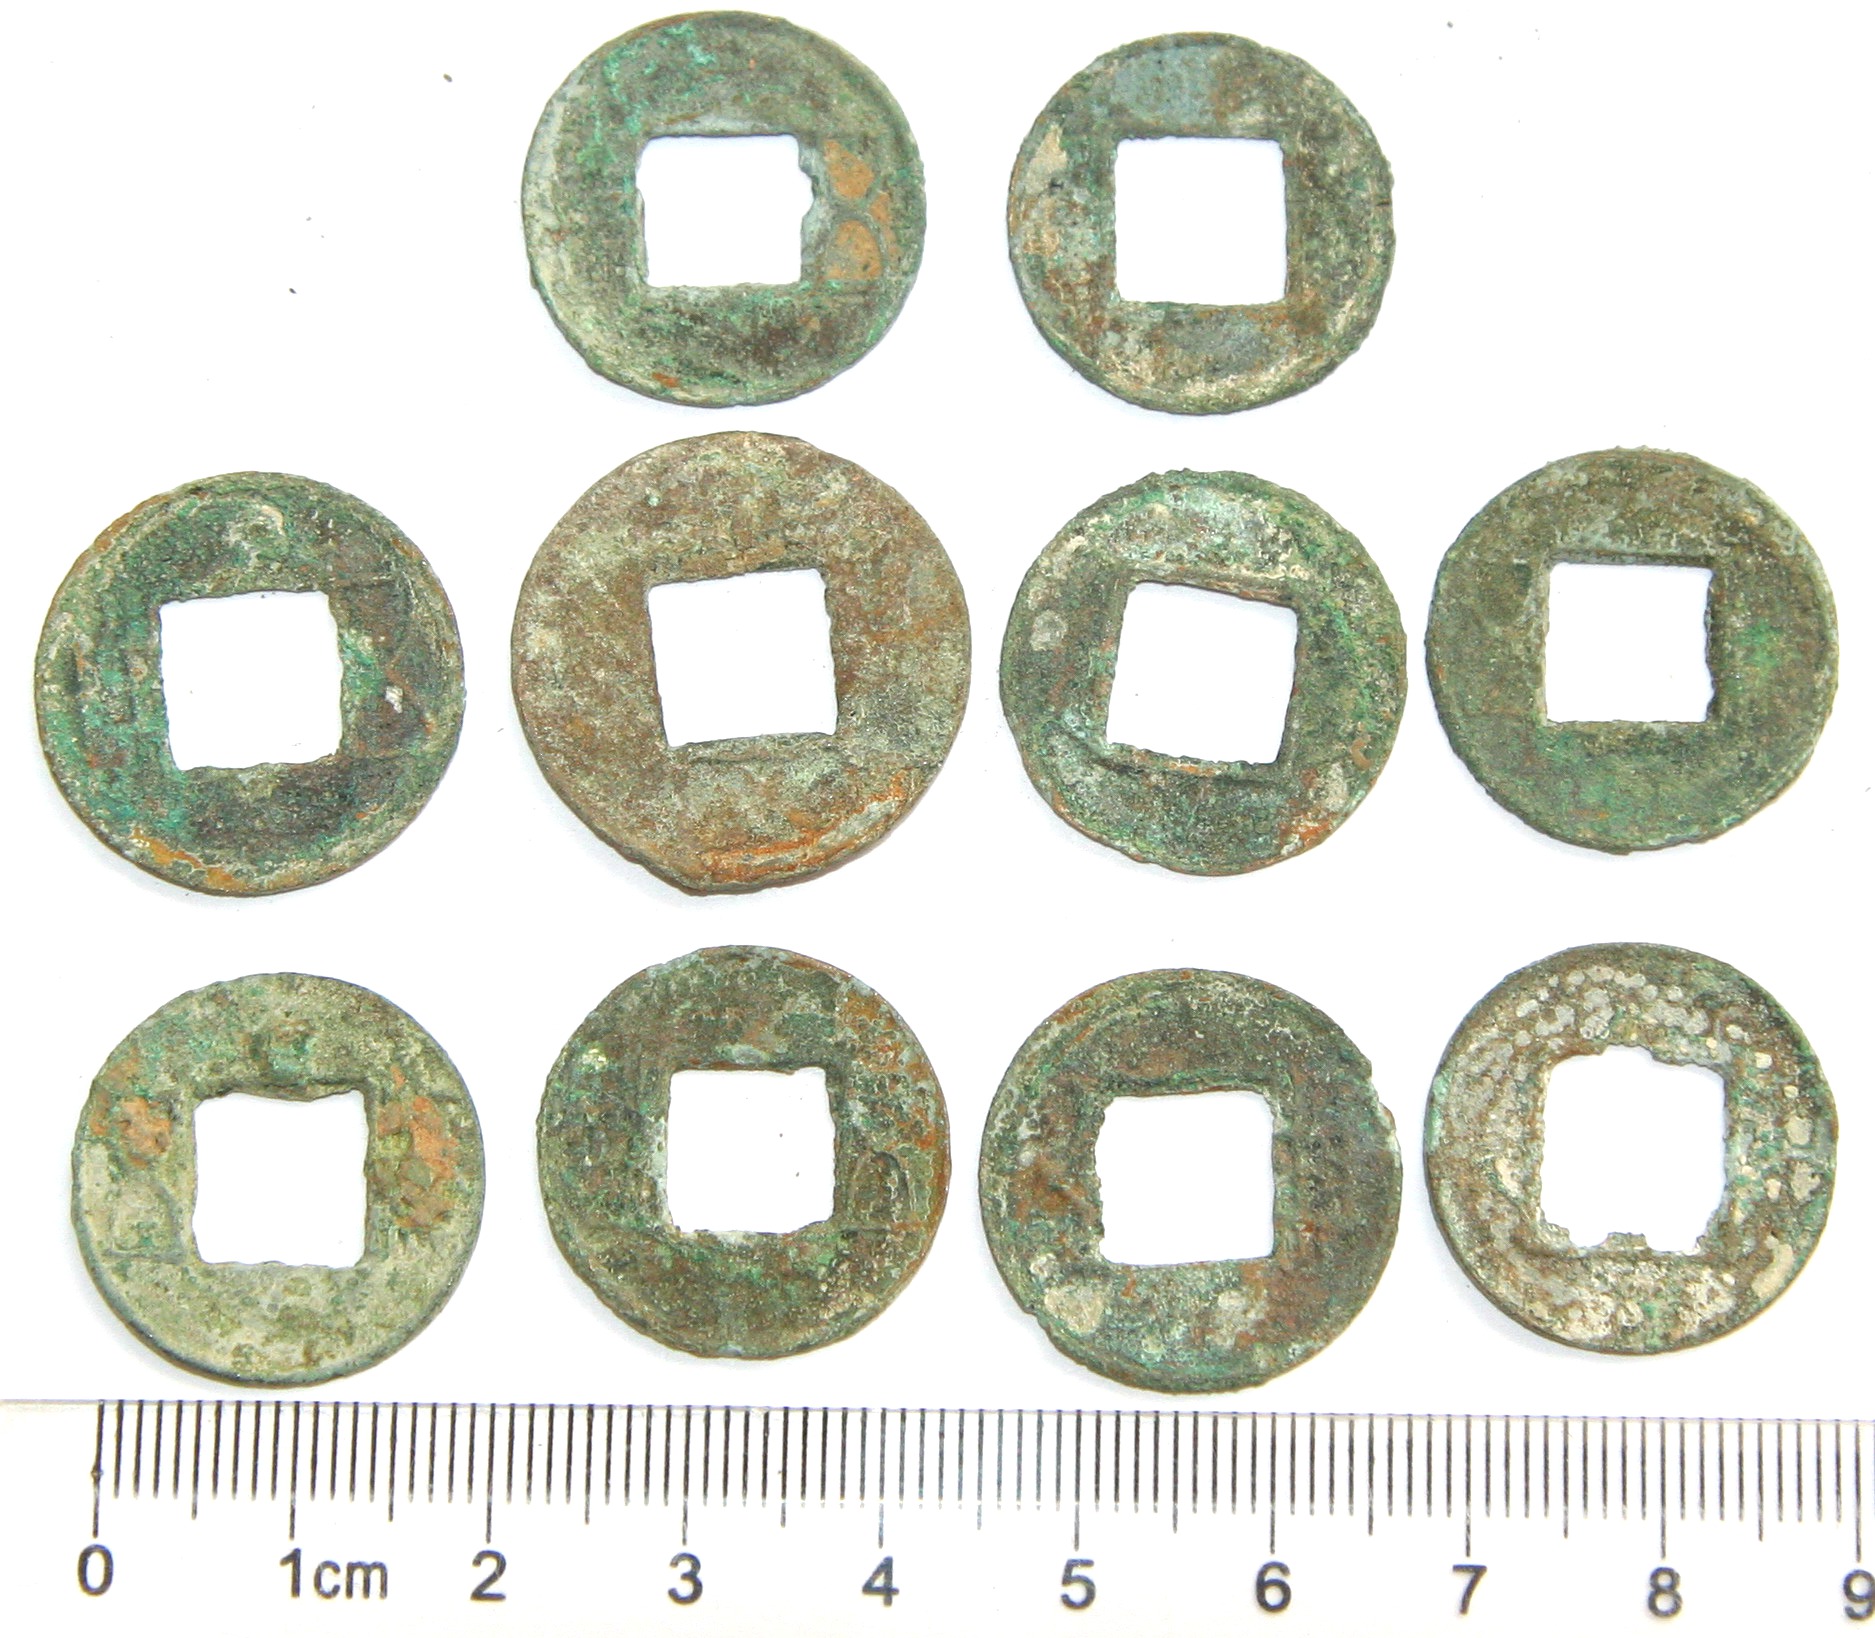 K2120, China Small Size Wu Zhu Coins 10 Pcs, AD 200